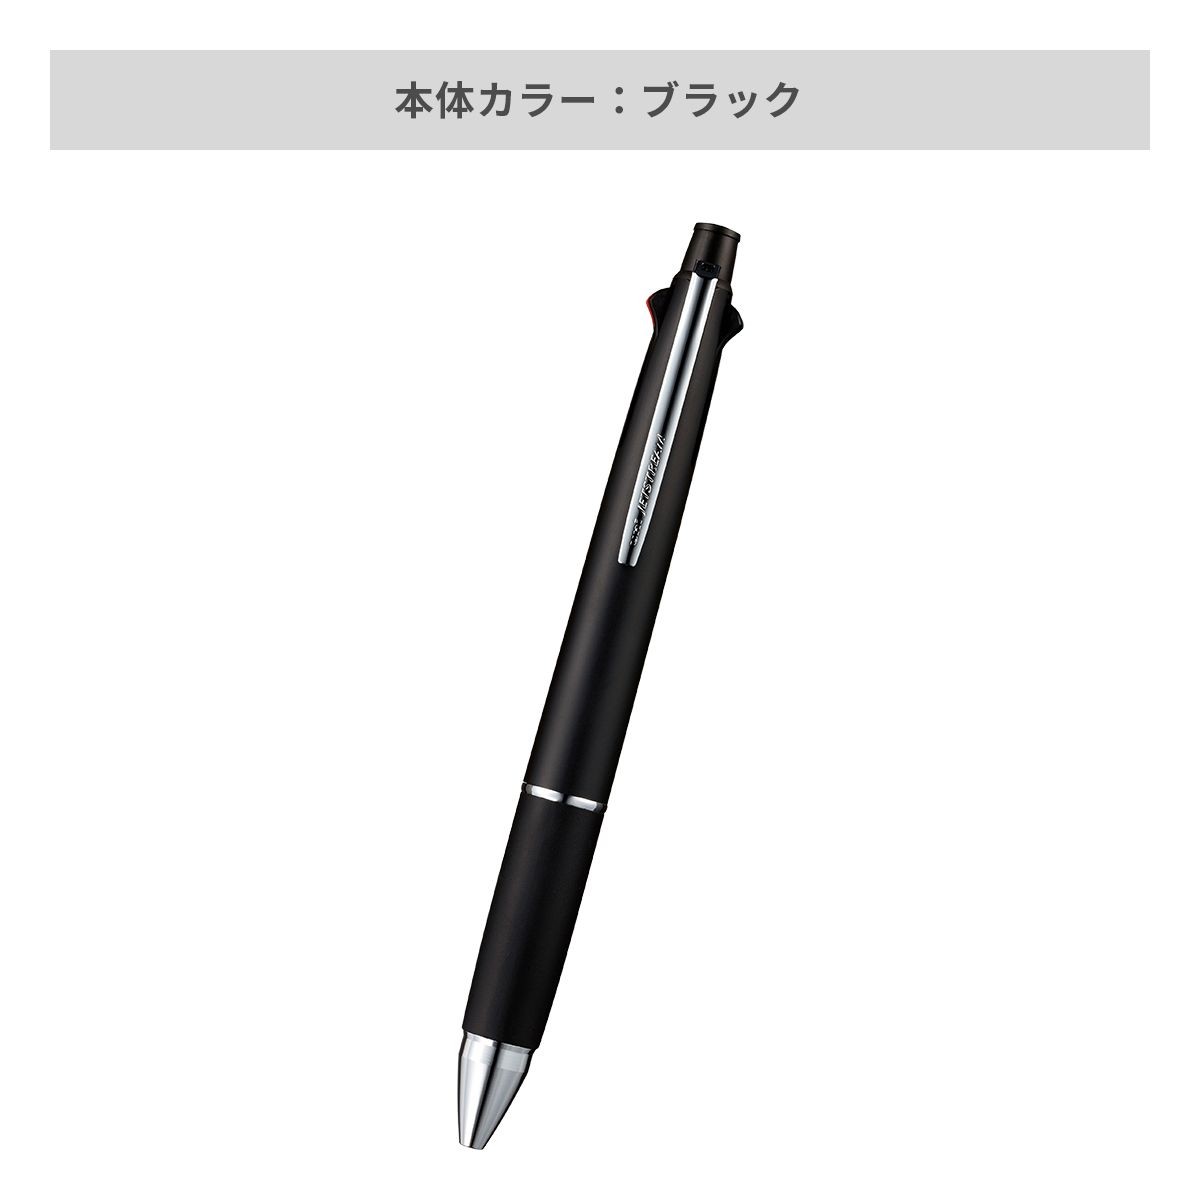 三菱鉛筆 ジェットストリーム 多機能ペン 4&1 0.5mm【多機能ペン / パッド印刷】 画像4